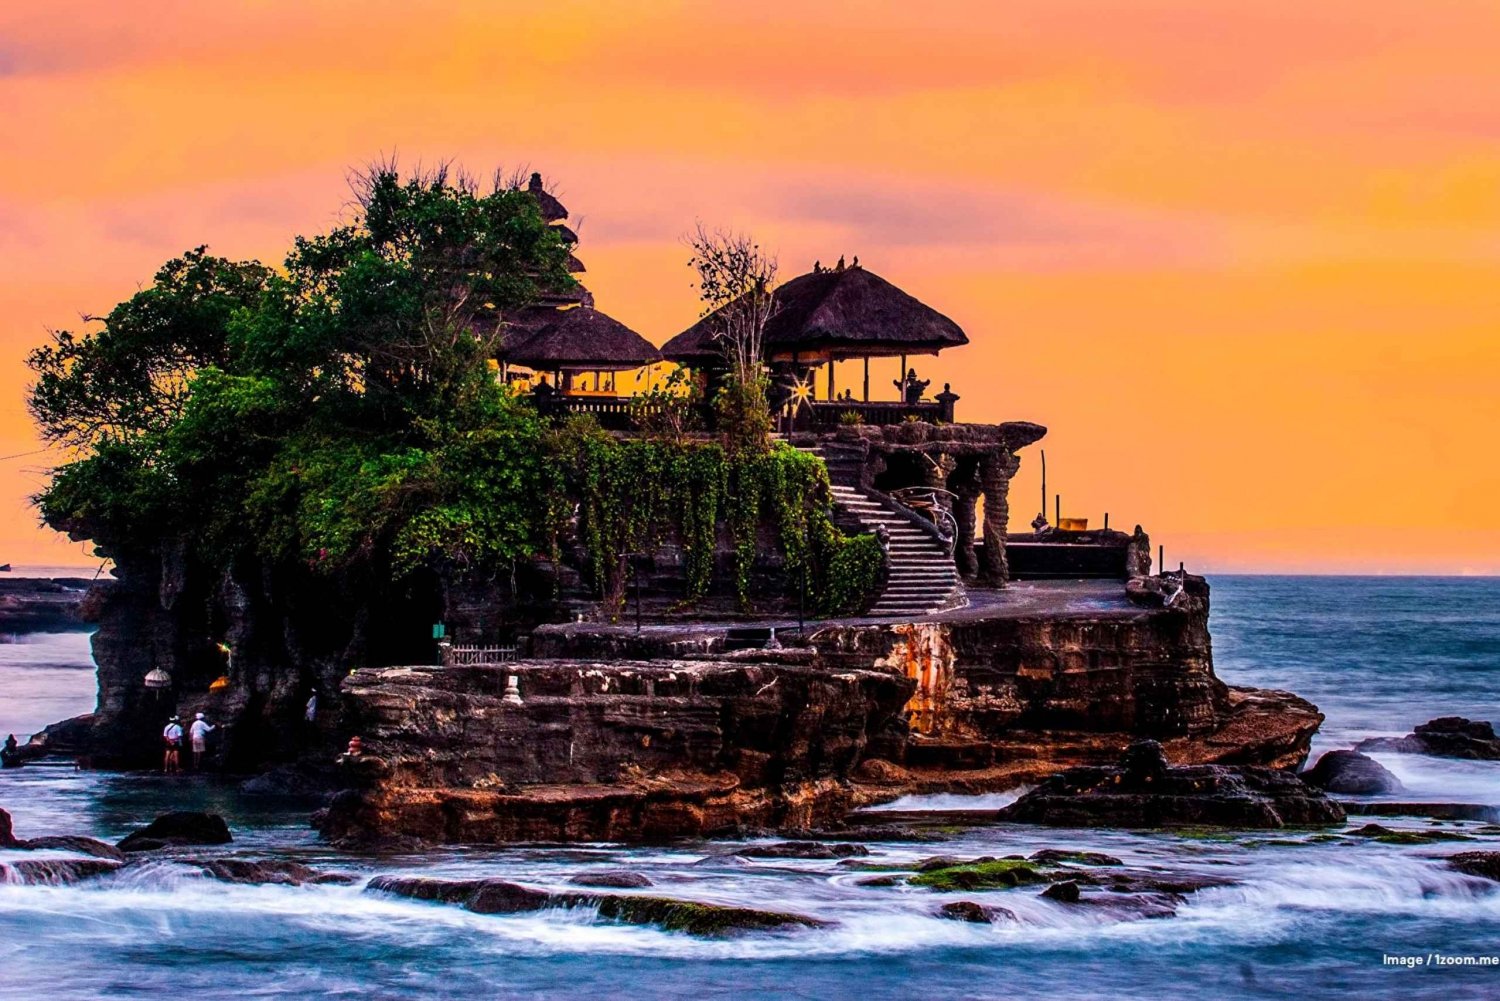 Bali : Ubud Waterfall, Rice Terrace & Tanah lot Sunset Tours (chutes d'eau, rizières et coucher de soleil)